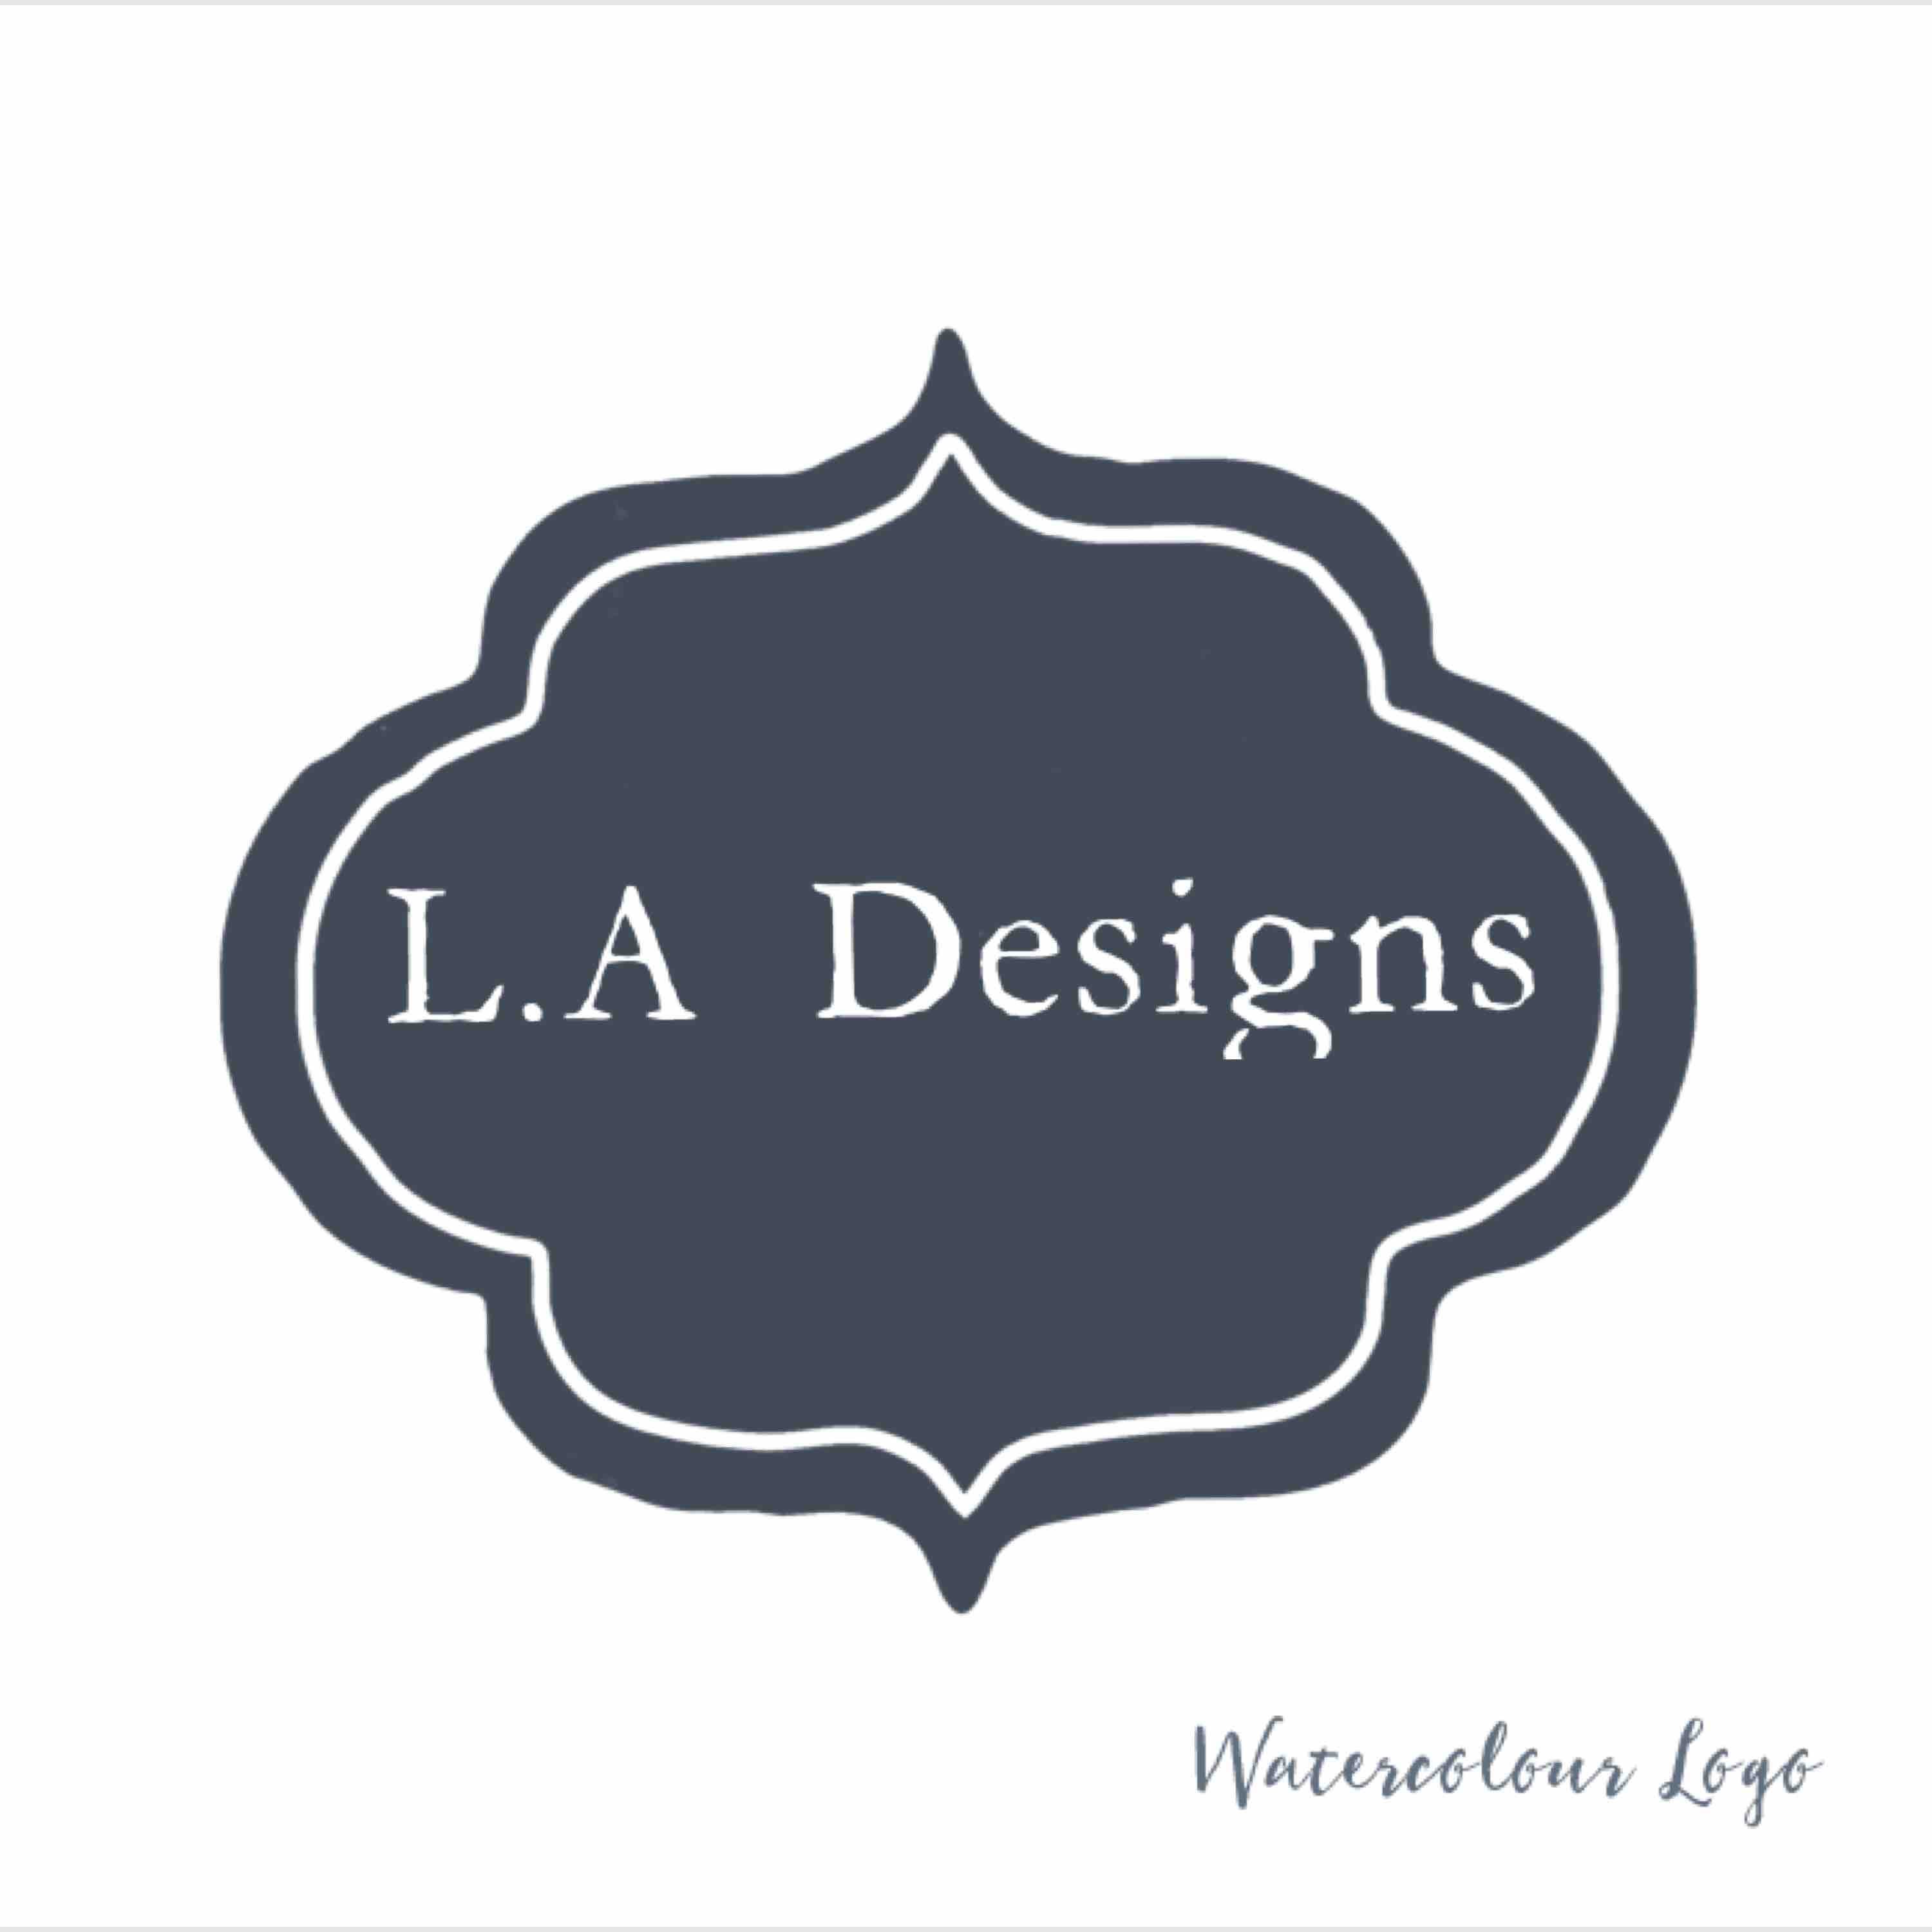 L.A Designs